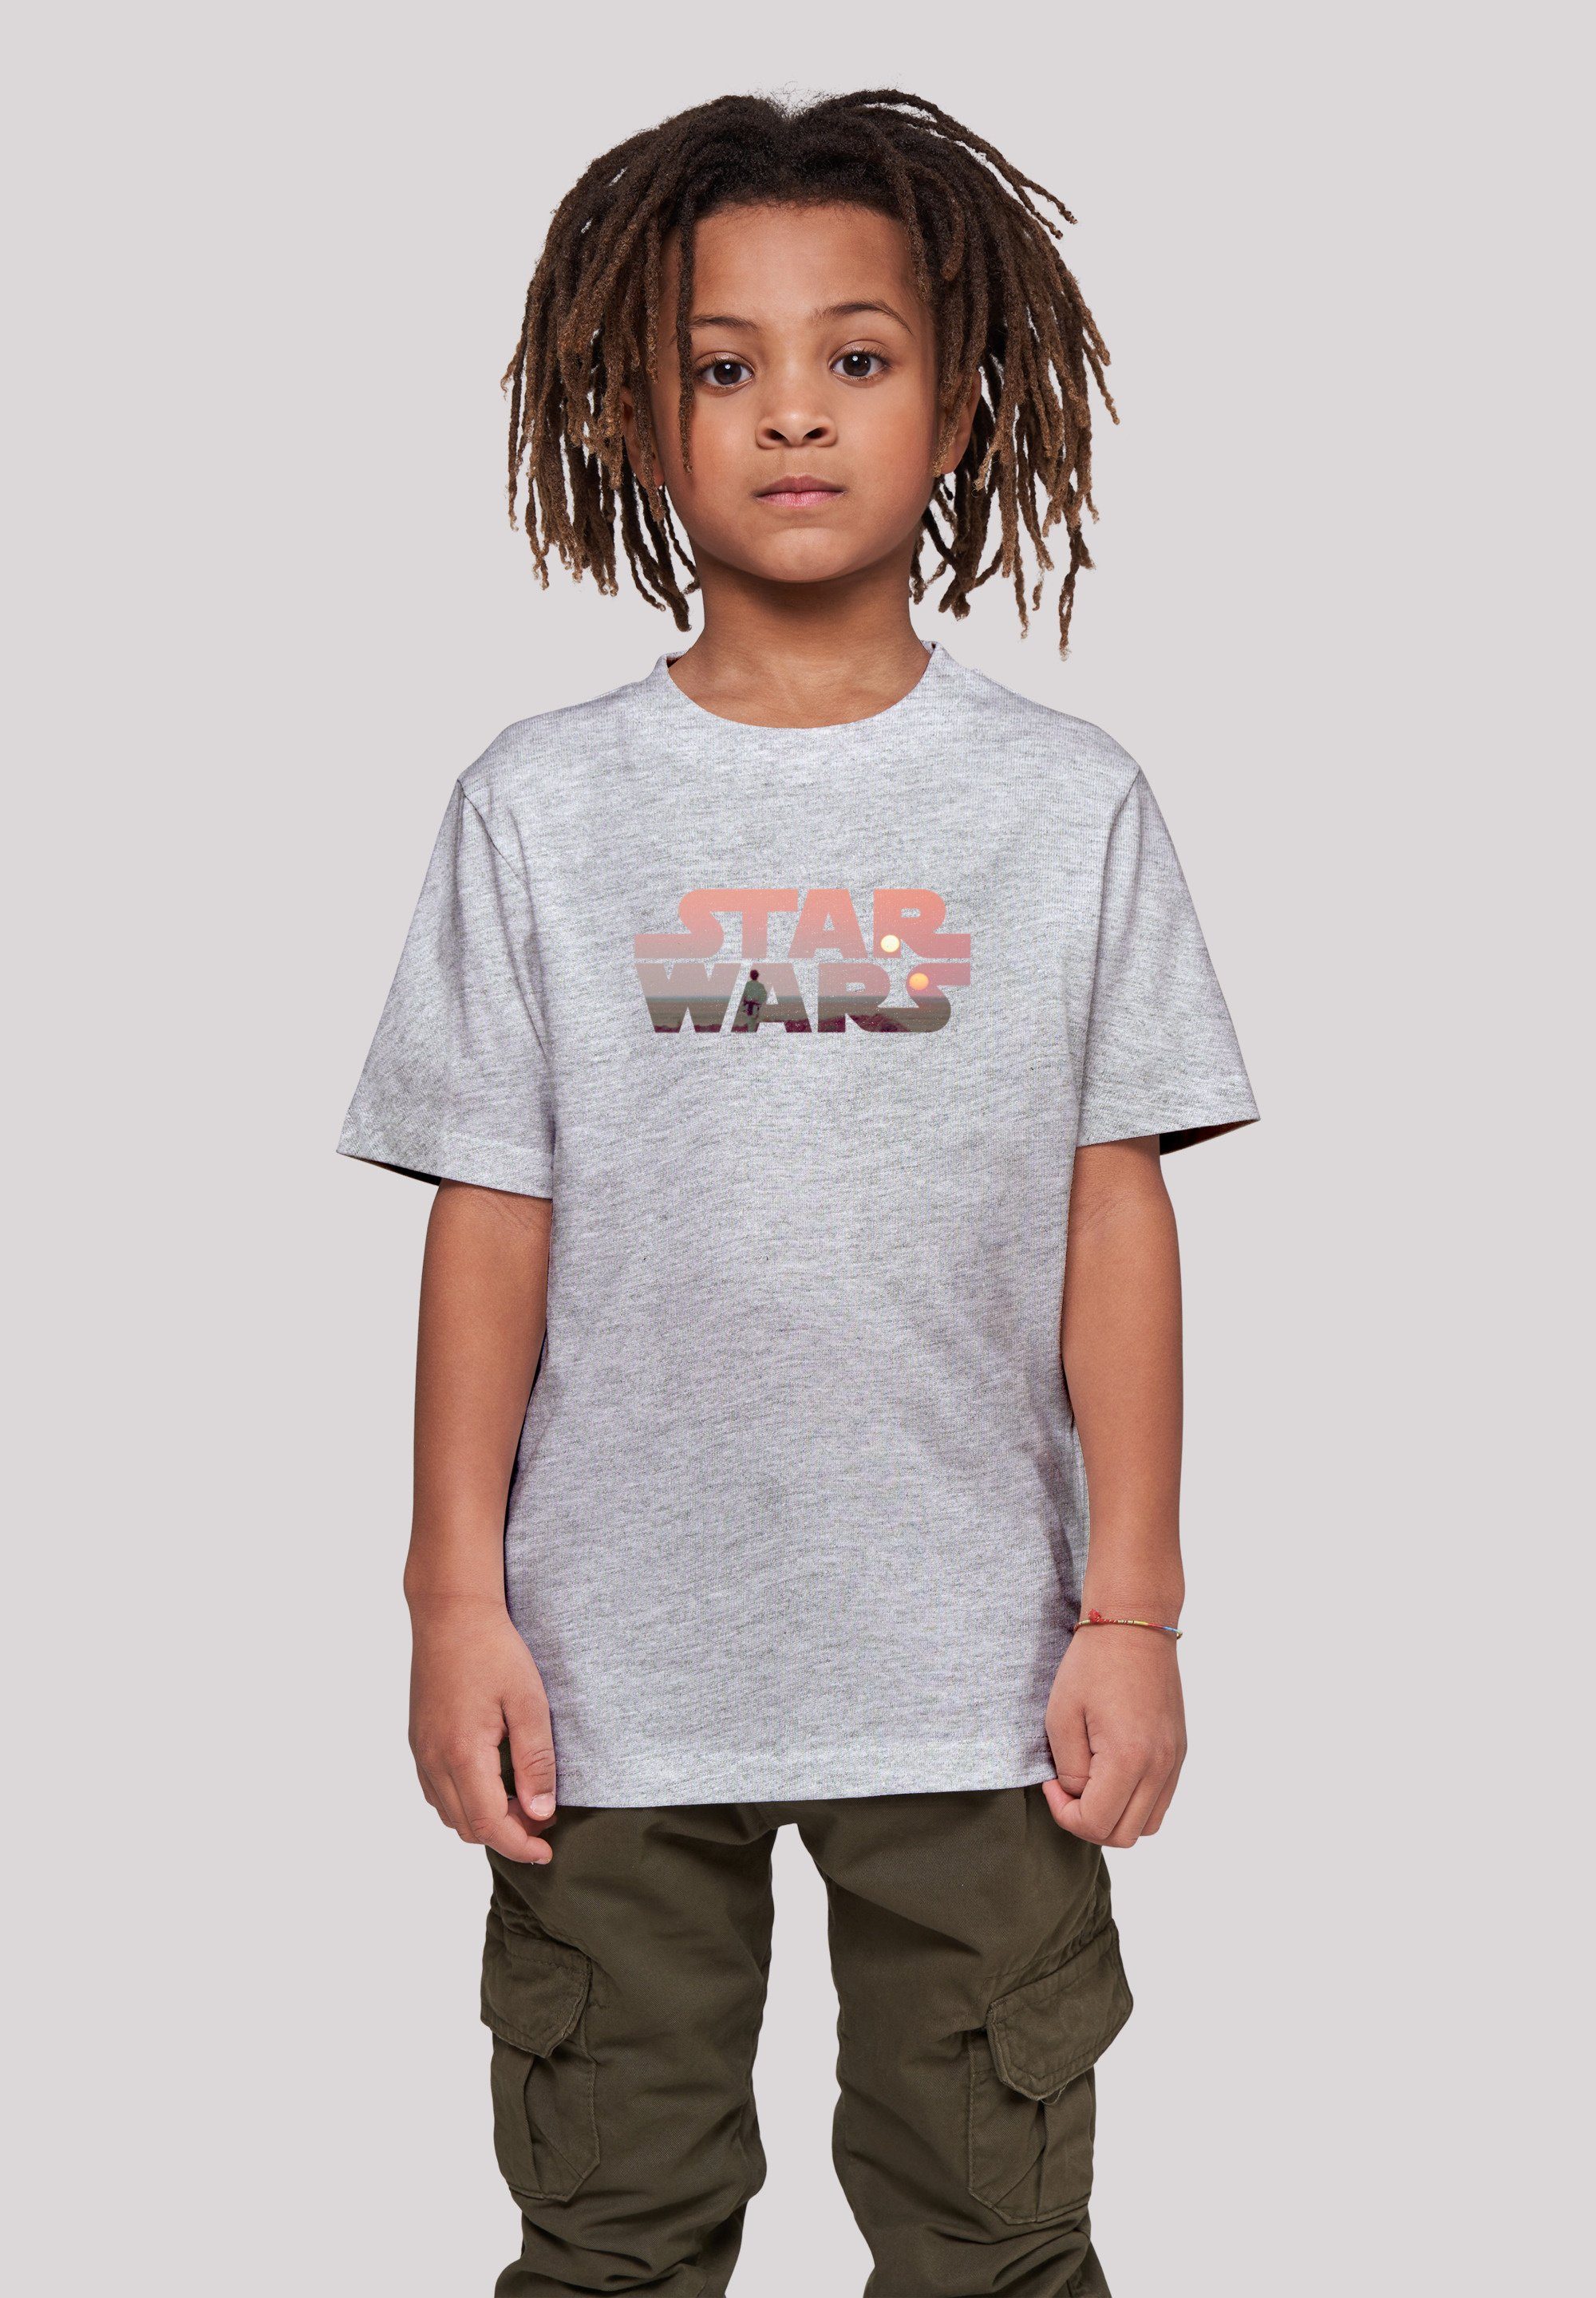 zum Wars wohlfühlen Bequemer Schnitt Logo rundum Print, Tatooine F4NT4STIC Star T-Shirt